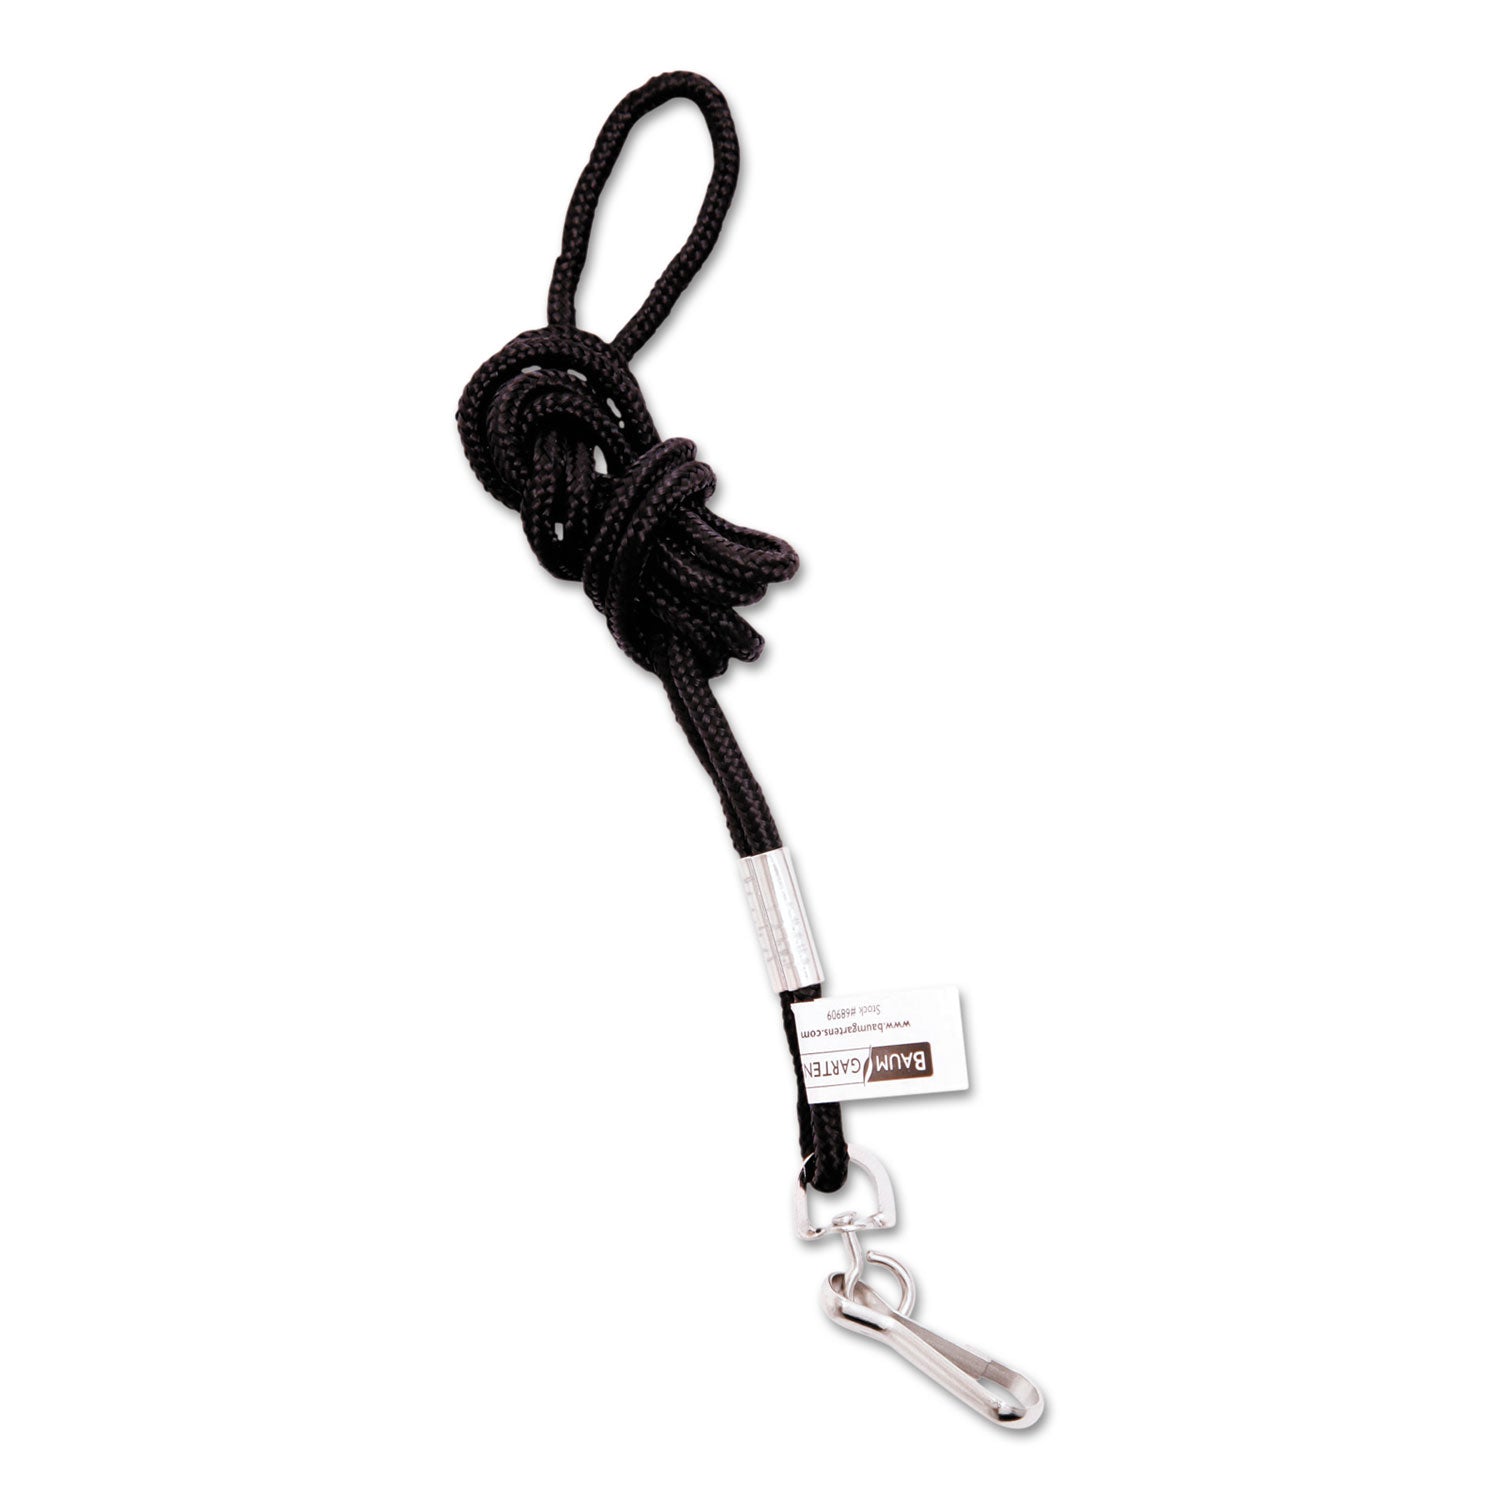 Rope Lanyard, Metal Hook Fastener, 36" Long, Nylon, Black - 